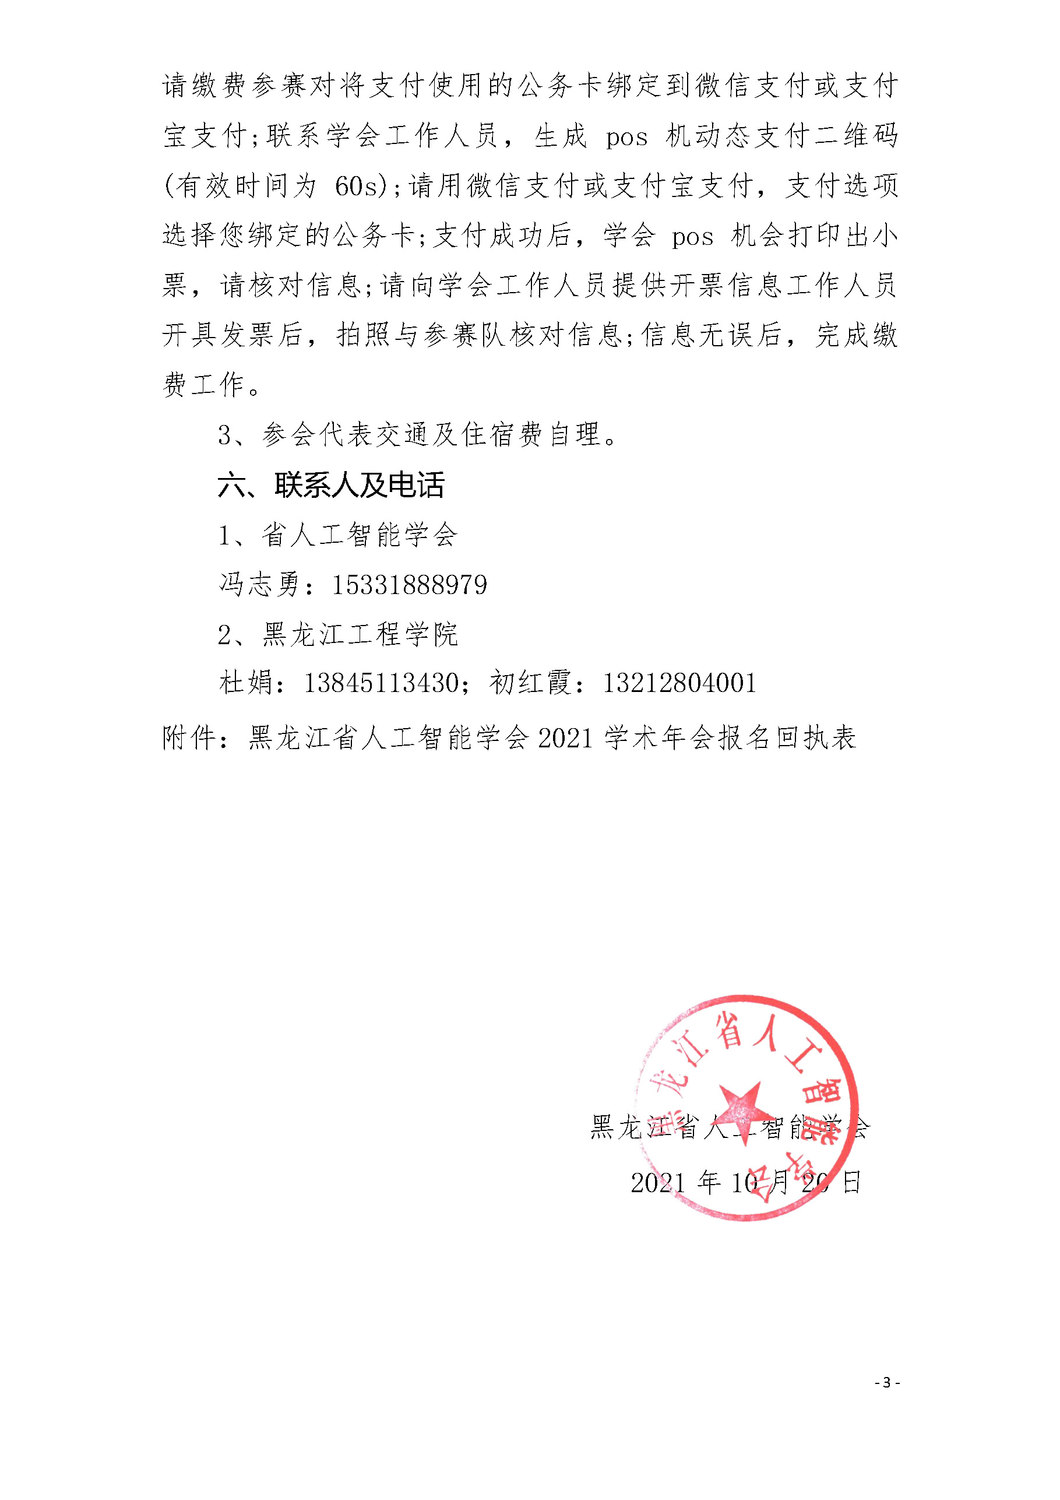 2021年黑龙江省人工智能学会年会通知 v1.1（改后）20211015_页面_3.jpg